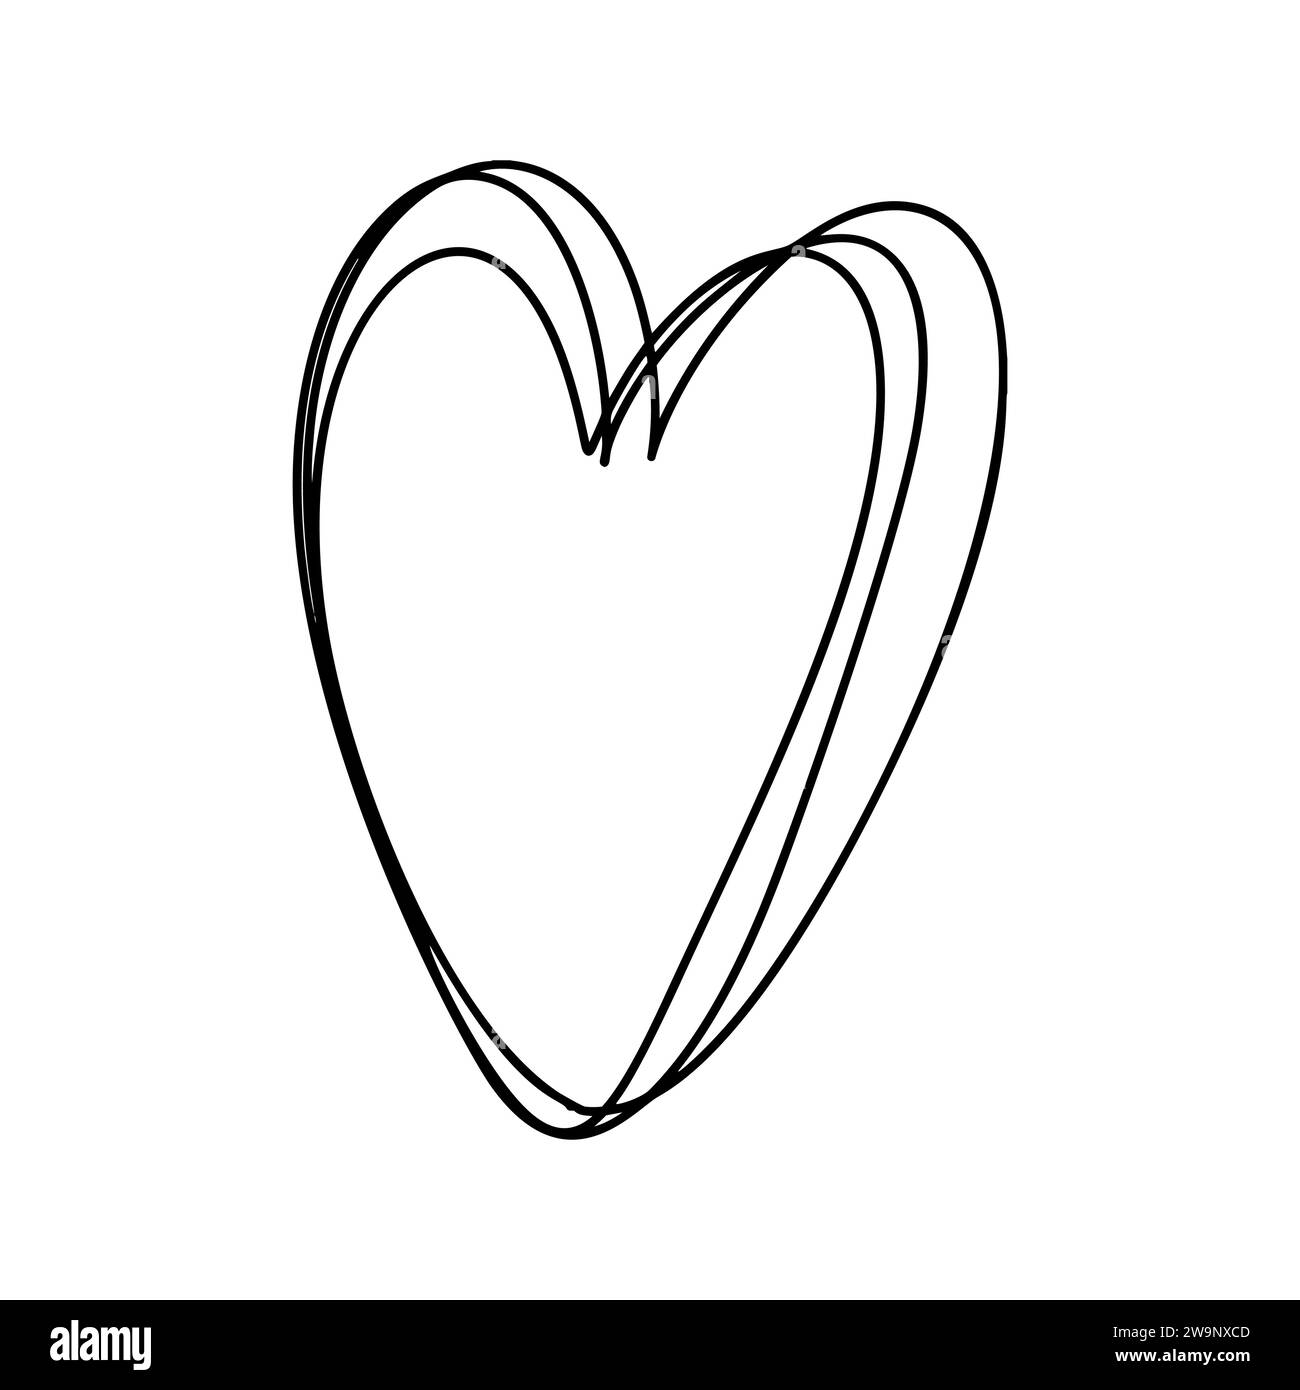 Love Heart Vektor Logo Linien Illustration. Schwarze Kontur. Element Monoline für Valentinstag Banner, Poster, Grußkarte Stock Vektor